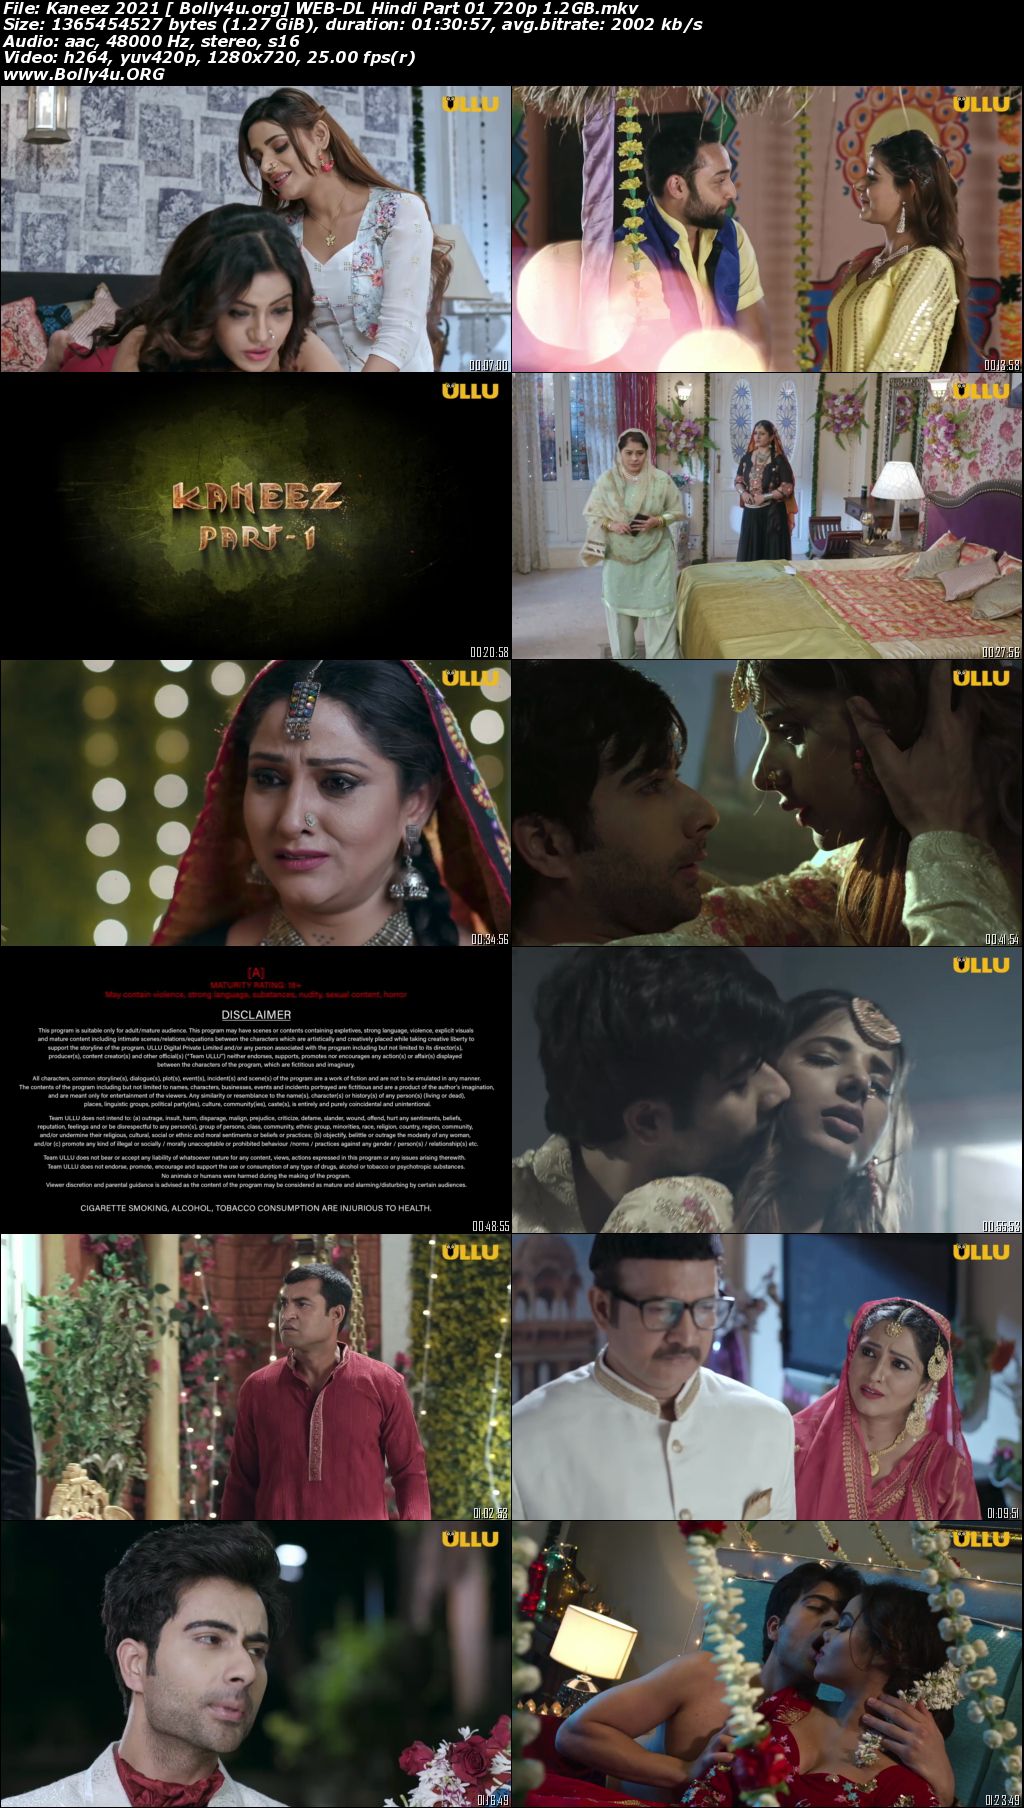 Kaneez 2021 WEB-DL 1.2Gb Hindi Part 01 ULLU 720p Download